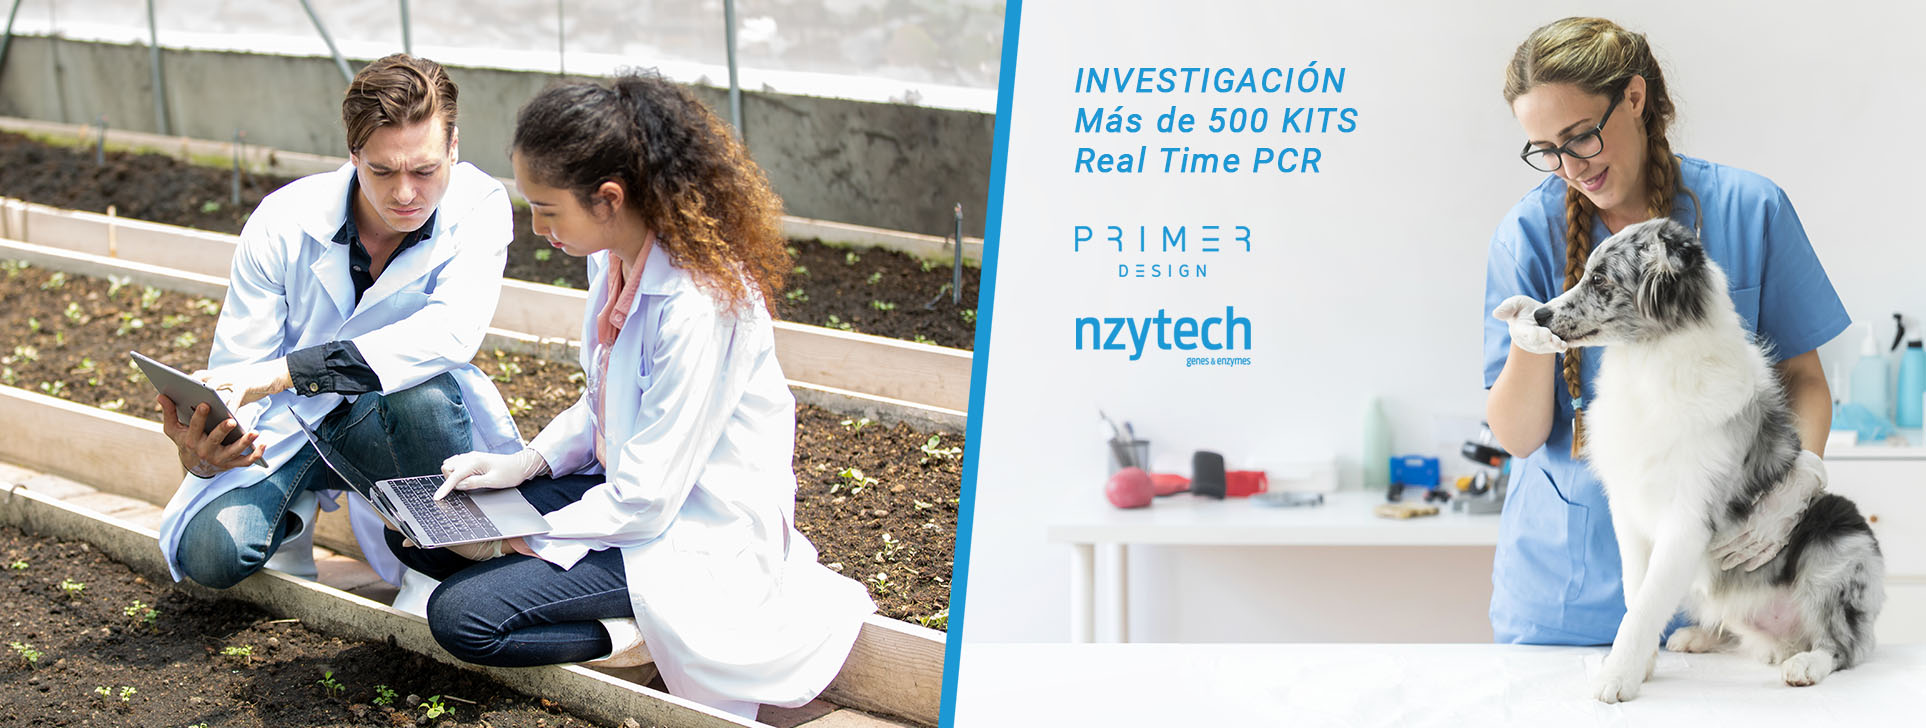 INVESTIGACIÓN Mas de 500 KITS Real Time PCR